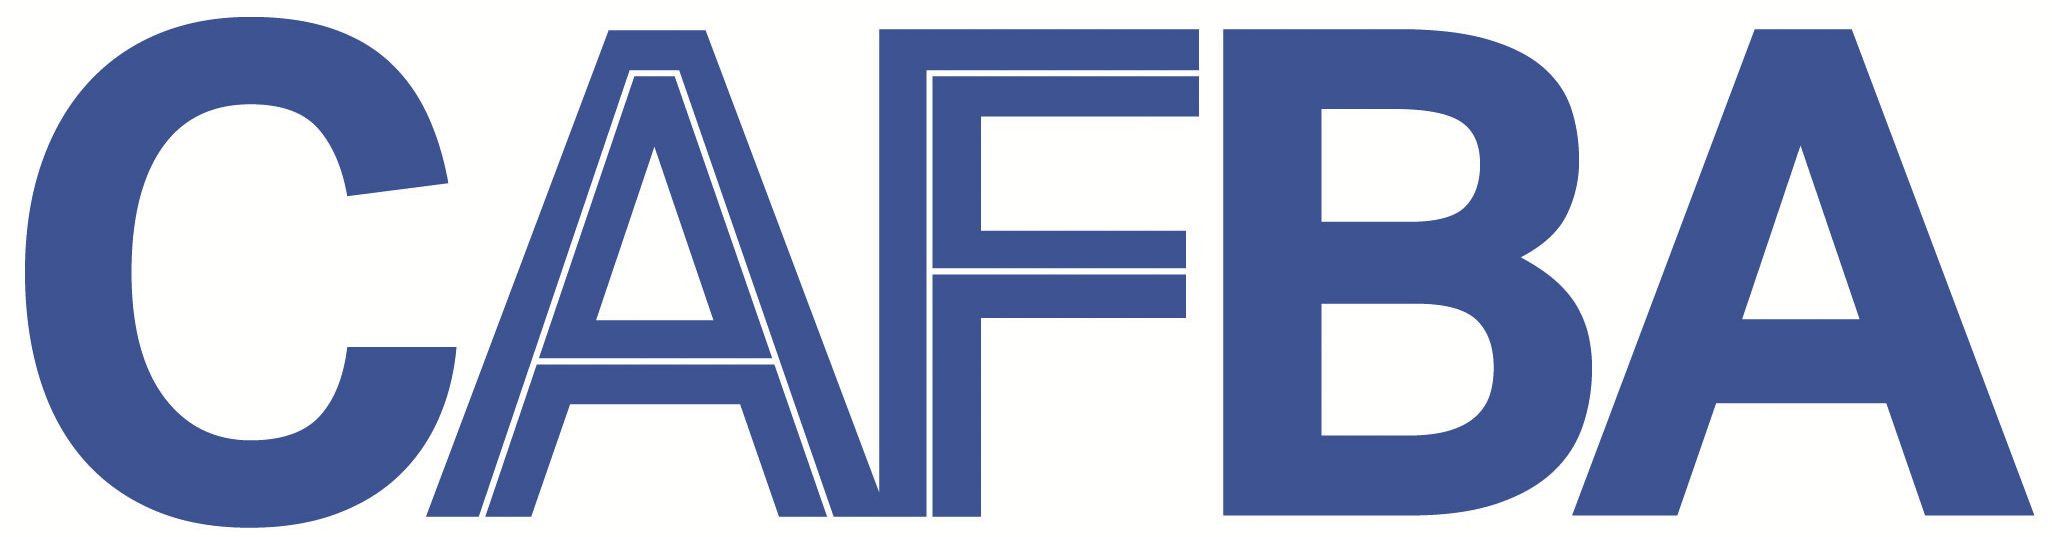 CAFBA-logo-file.jpg